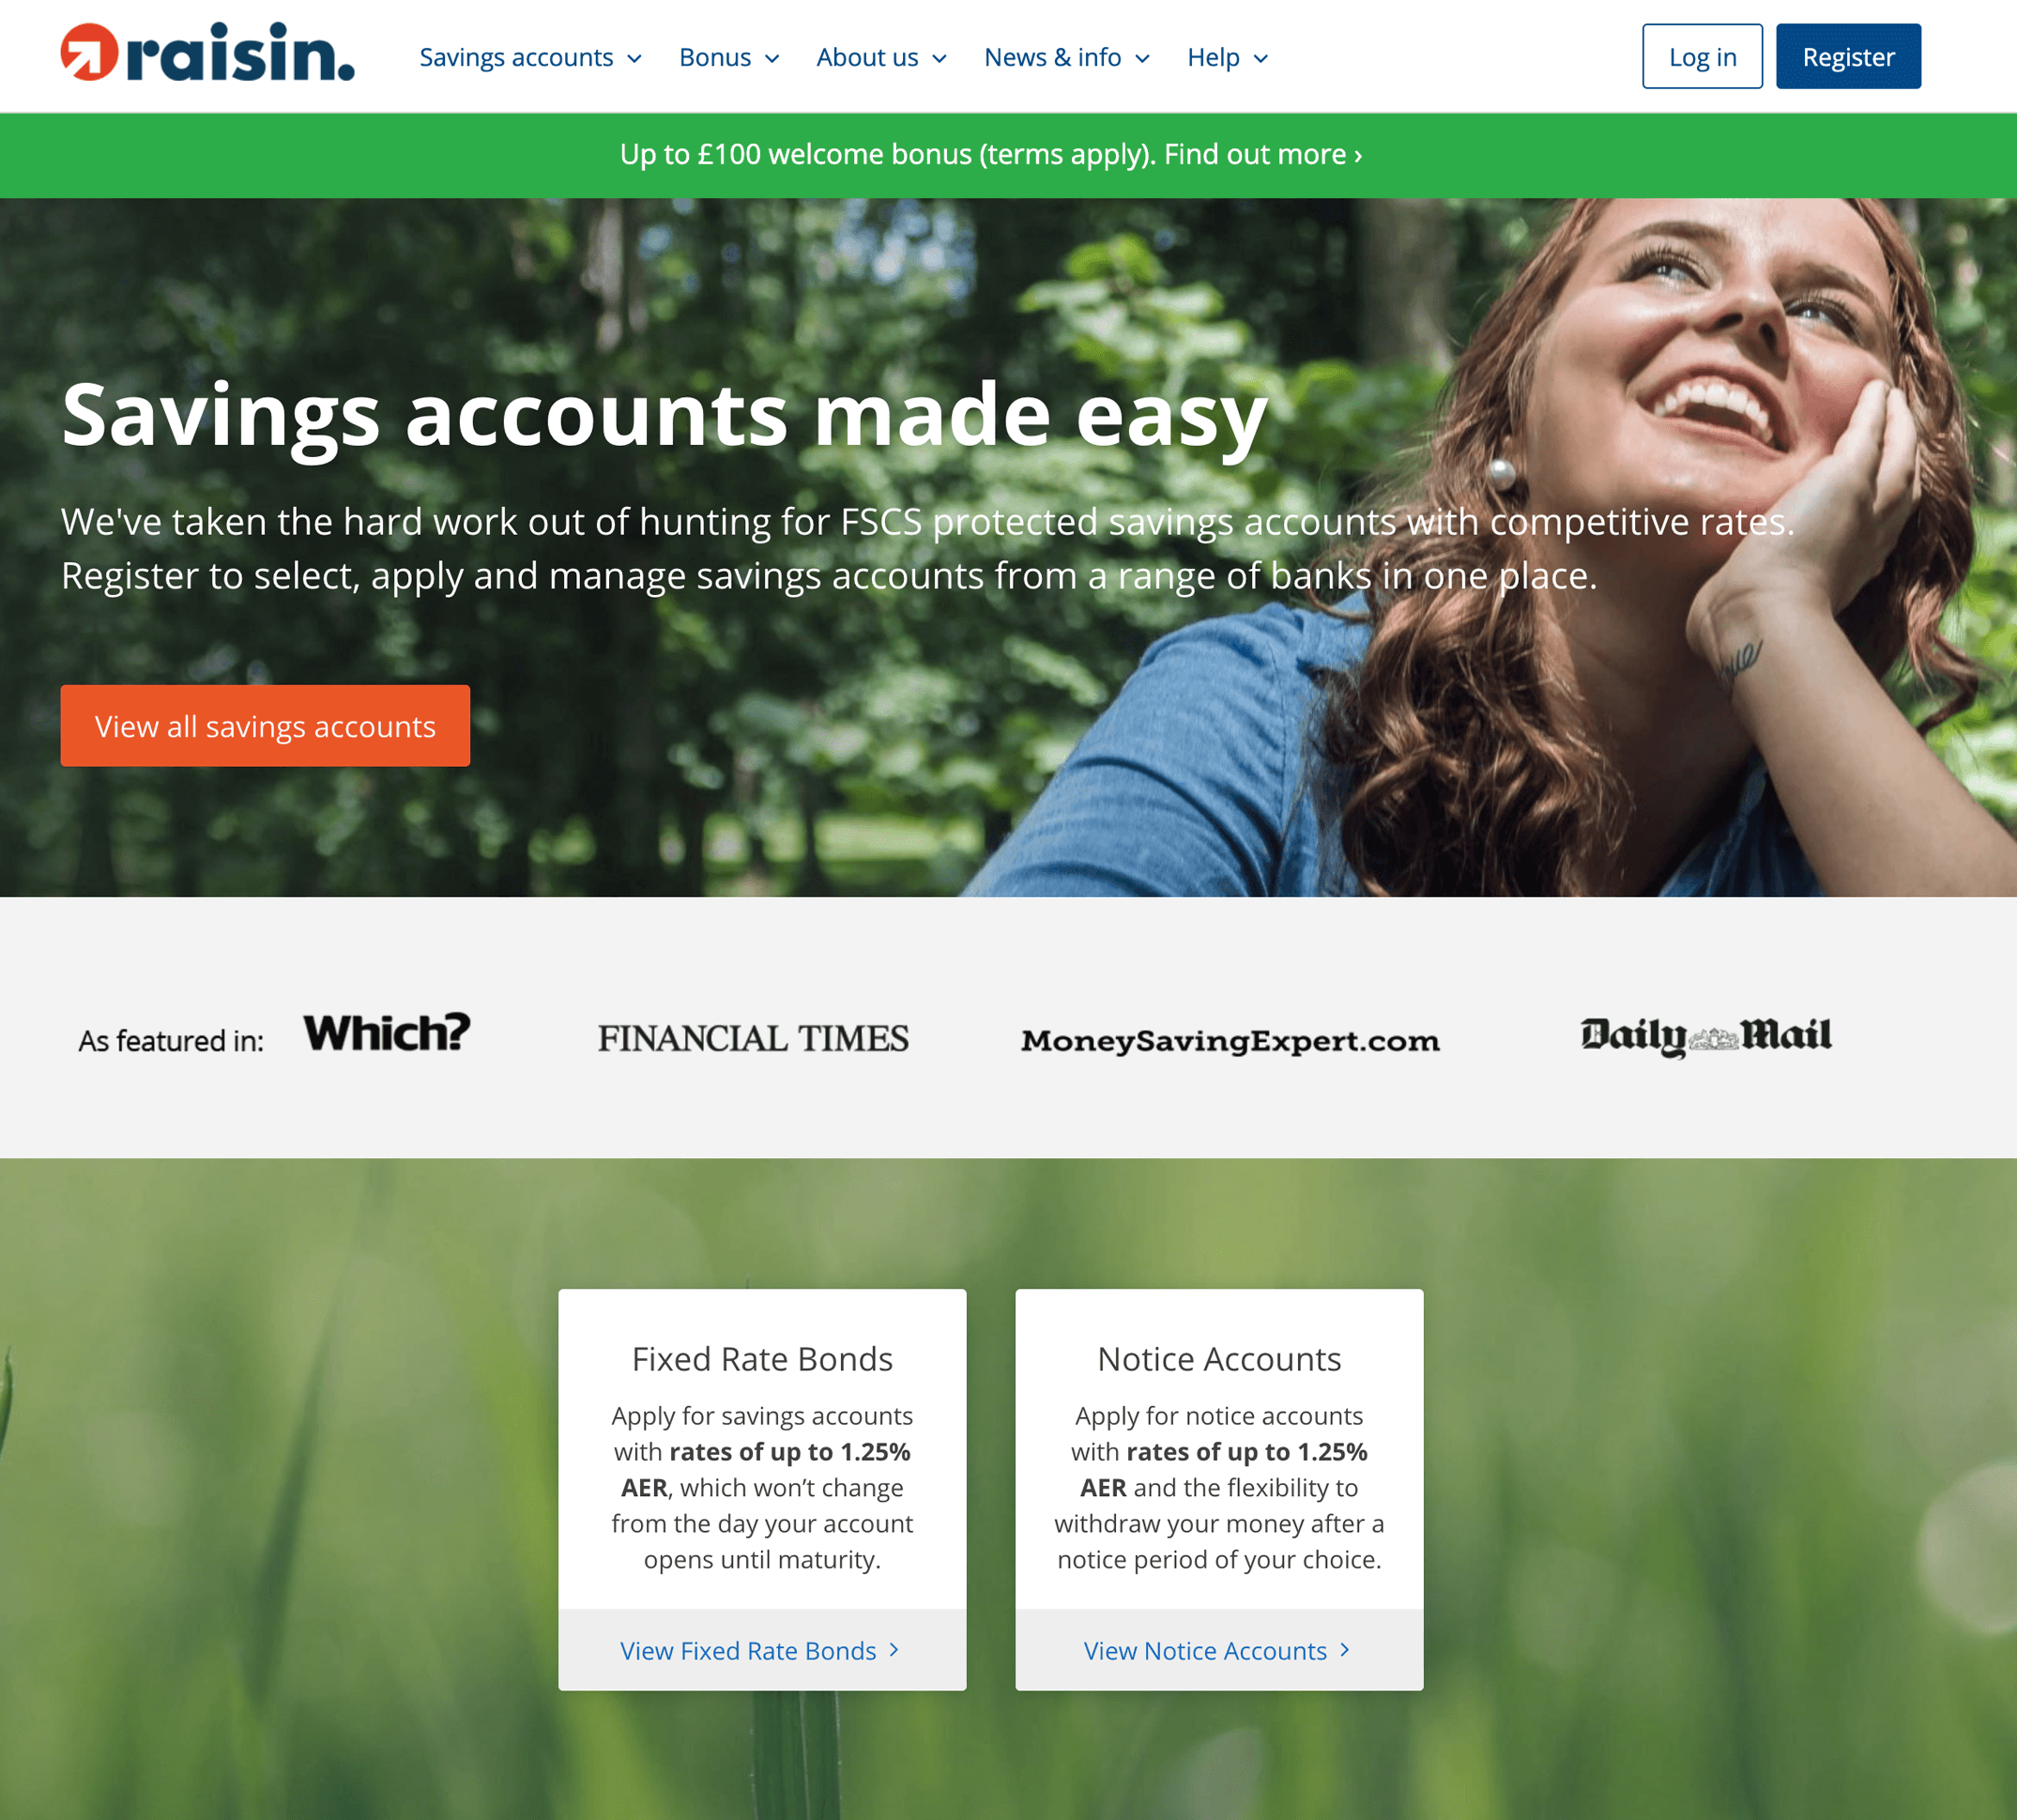 Raisin UK homepage, June 2020